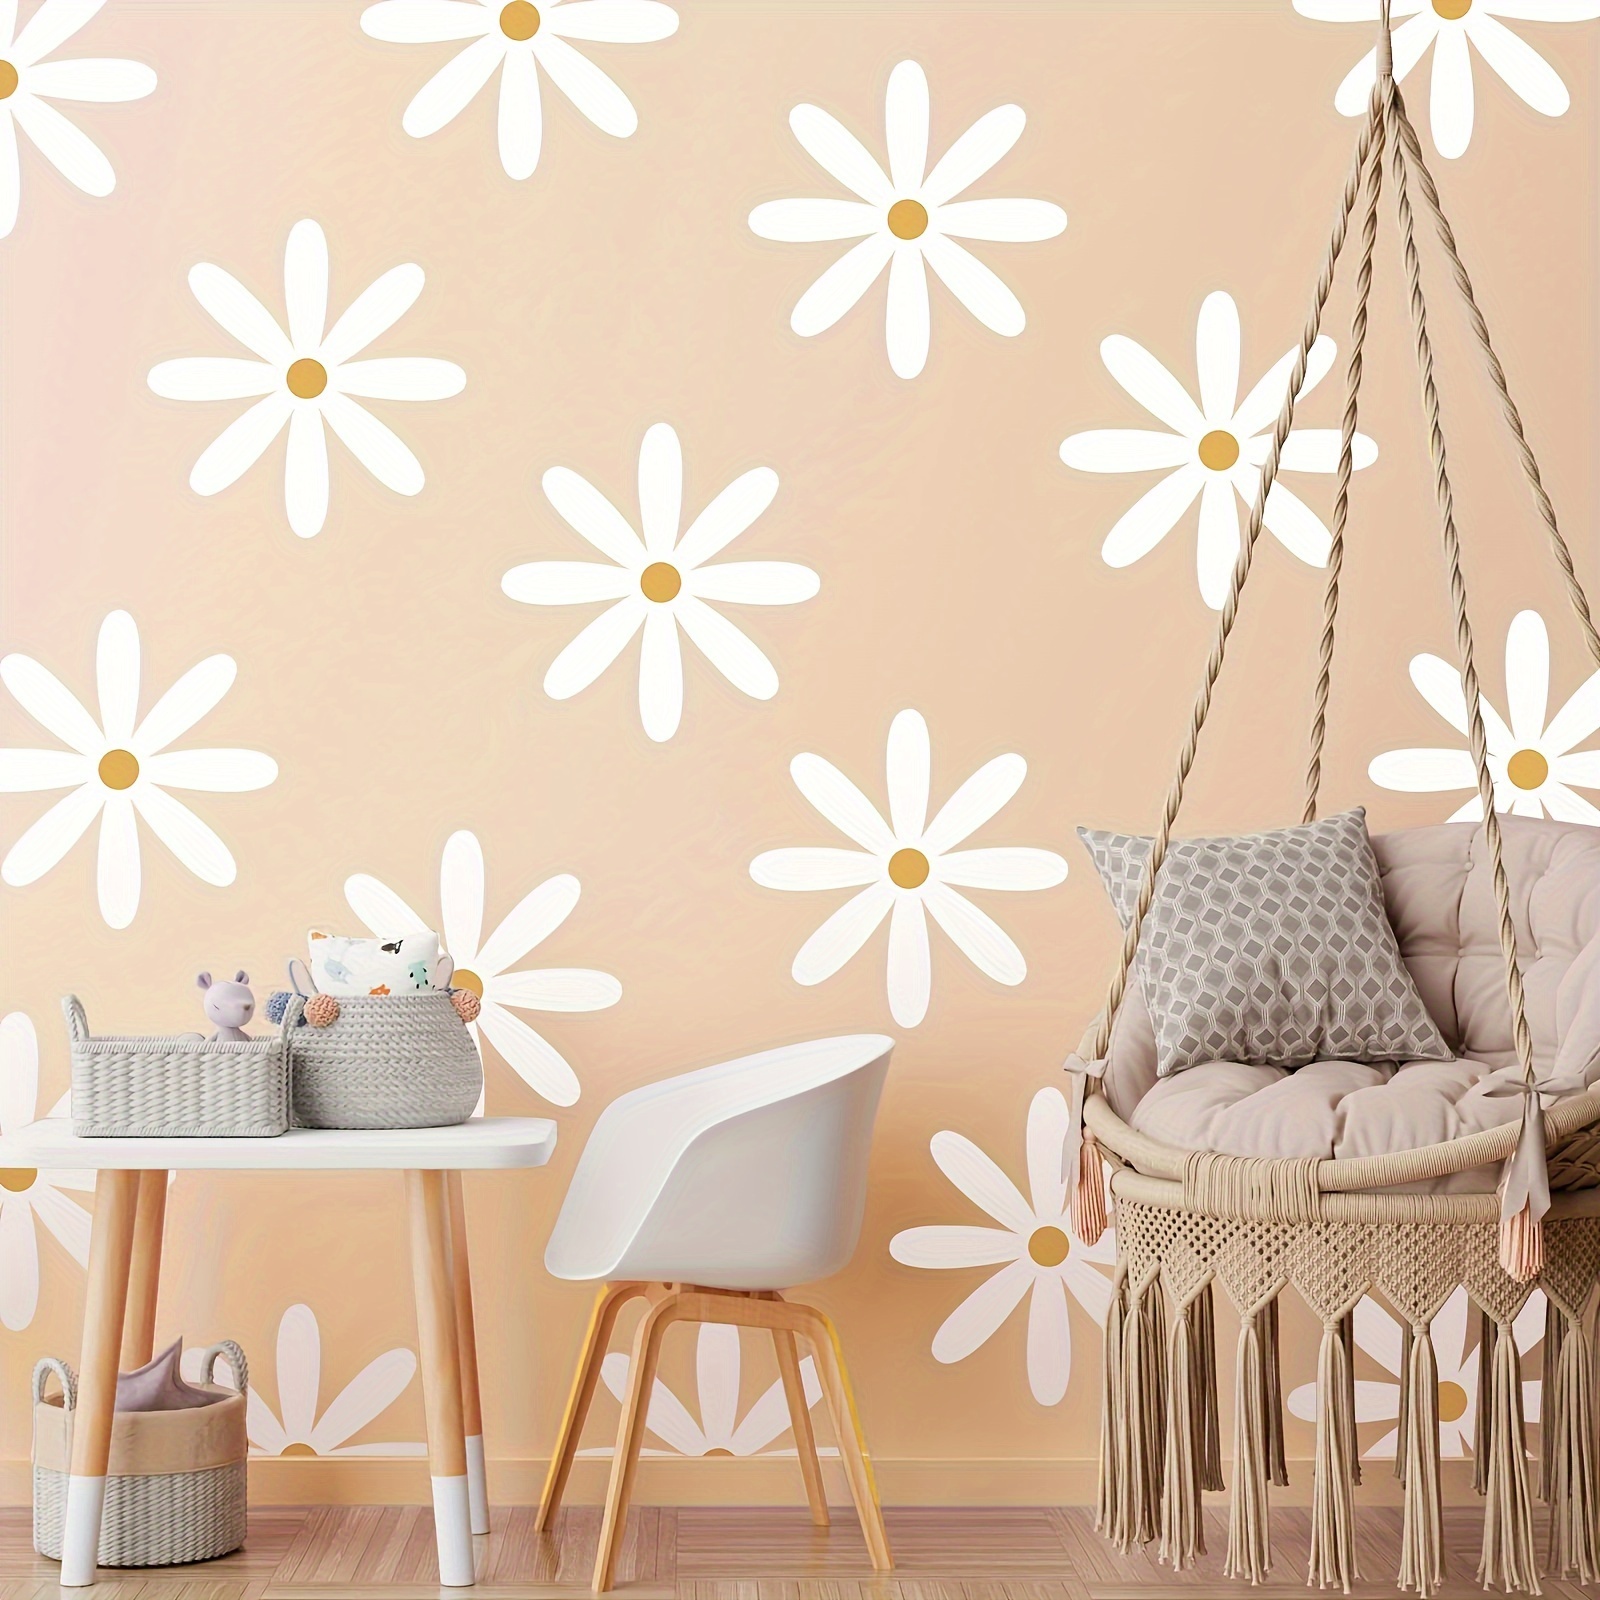 White Daisies 8x10 Art Print - Charming Floral Wall Decor » Pip & Cricket